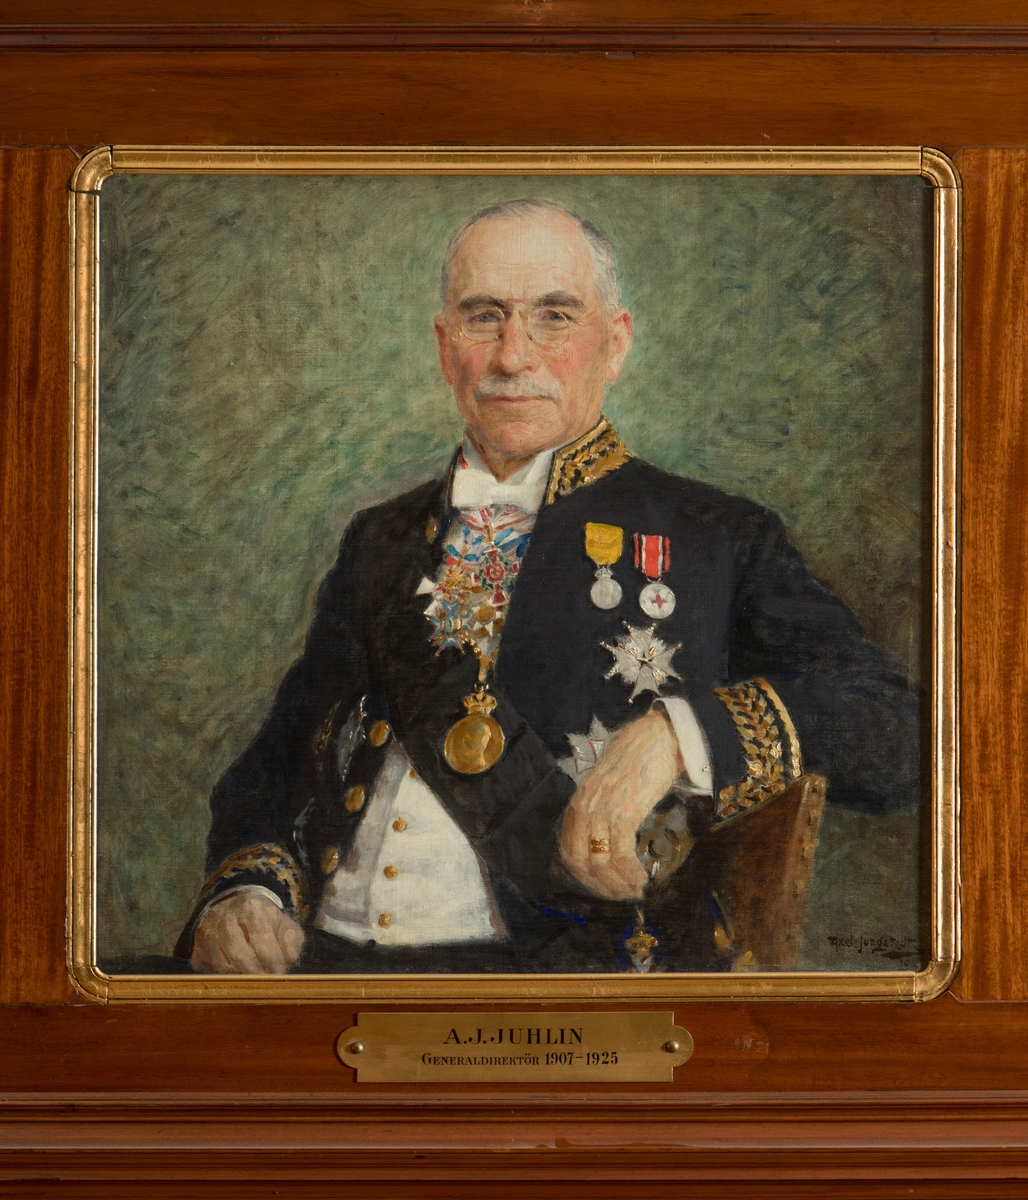 Porträtt i olja av generaldirektör Julius Juhlin.

Duken är fäst på en träplatta. En mässingsskylt med text: "A.J. Juhlin, Generaldirektör 1907-1925" tillhör.